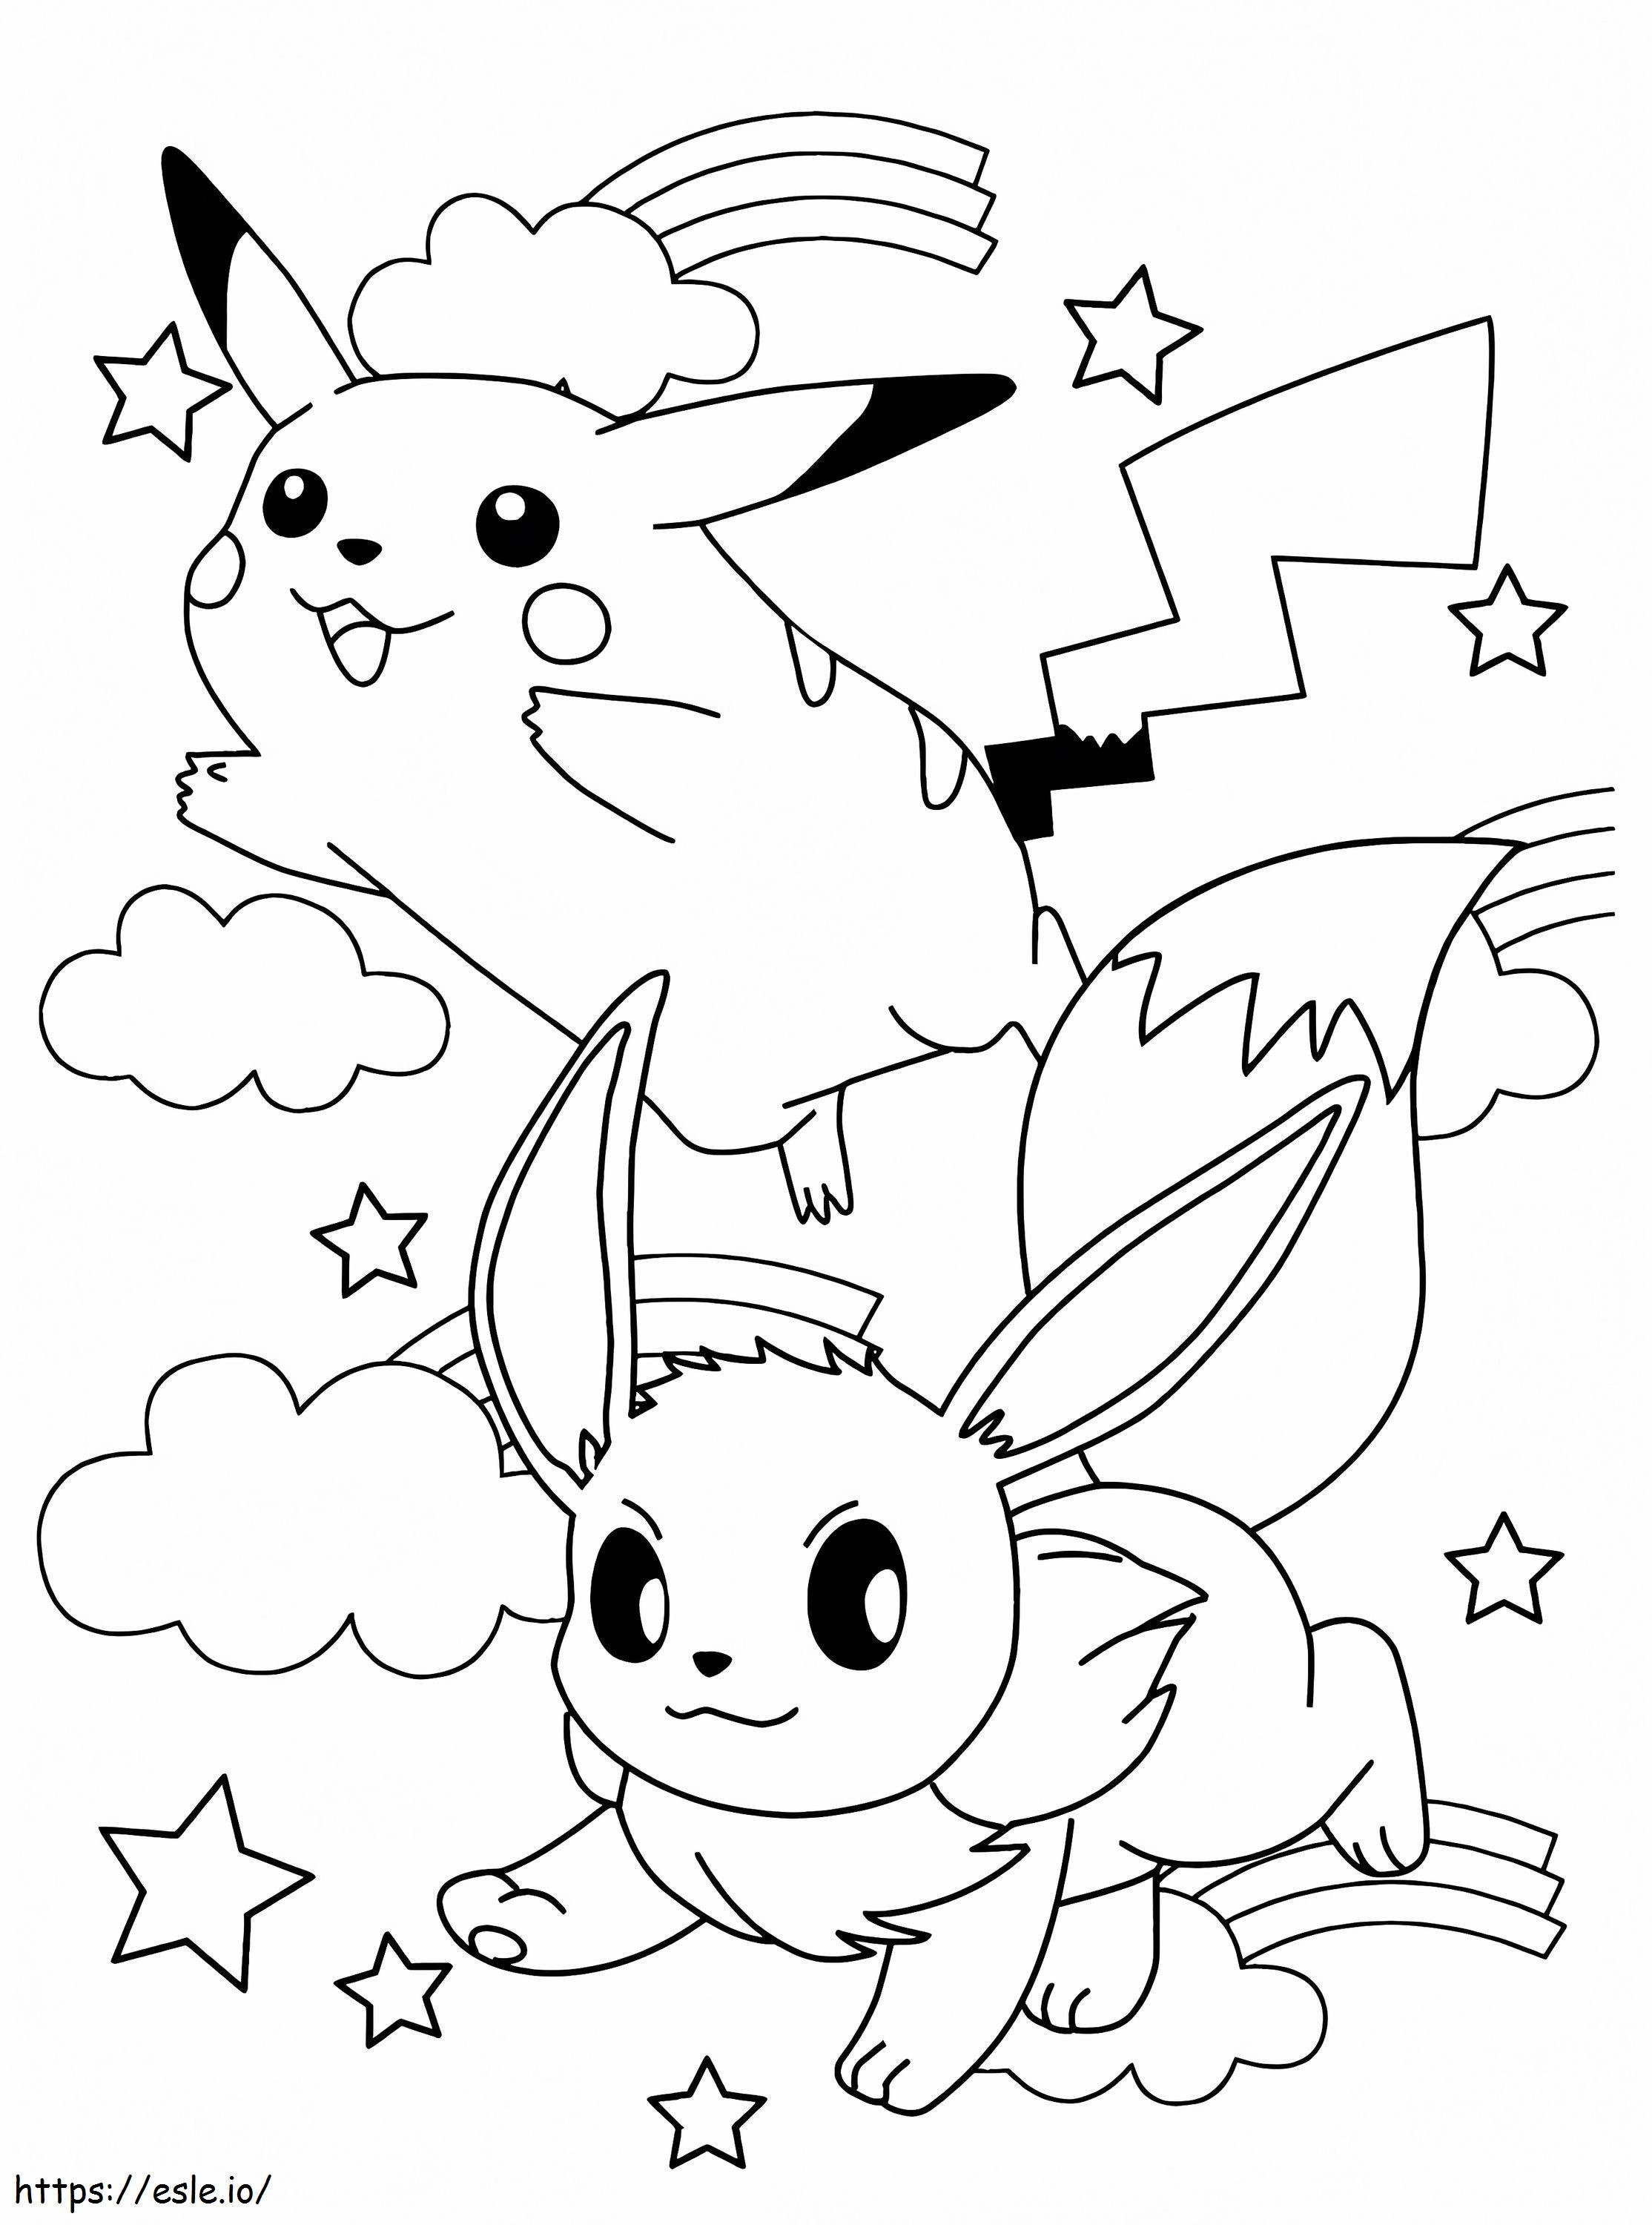 Colorir Eevee Pokémon Home para imprimir gratuitamente imagens de Pikachu para imprimir e colorir imagens Livro de colorir Folhas em PDF Personagens Folha de Charizard Fotos Cartões Lendários em escala 1 para colorir